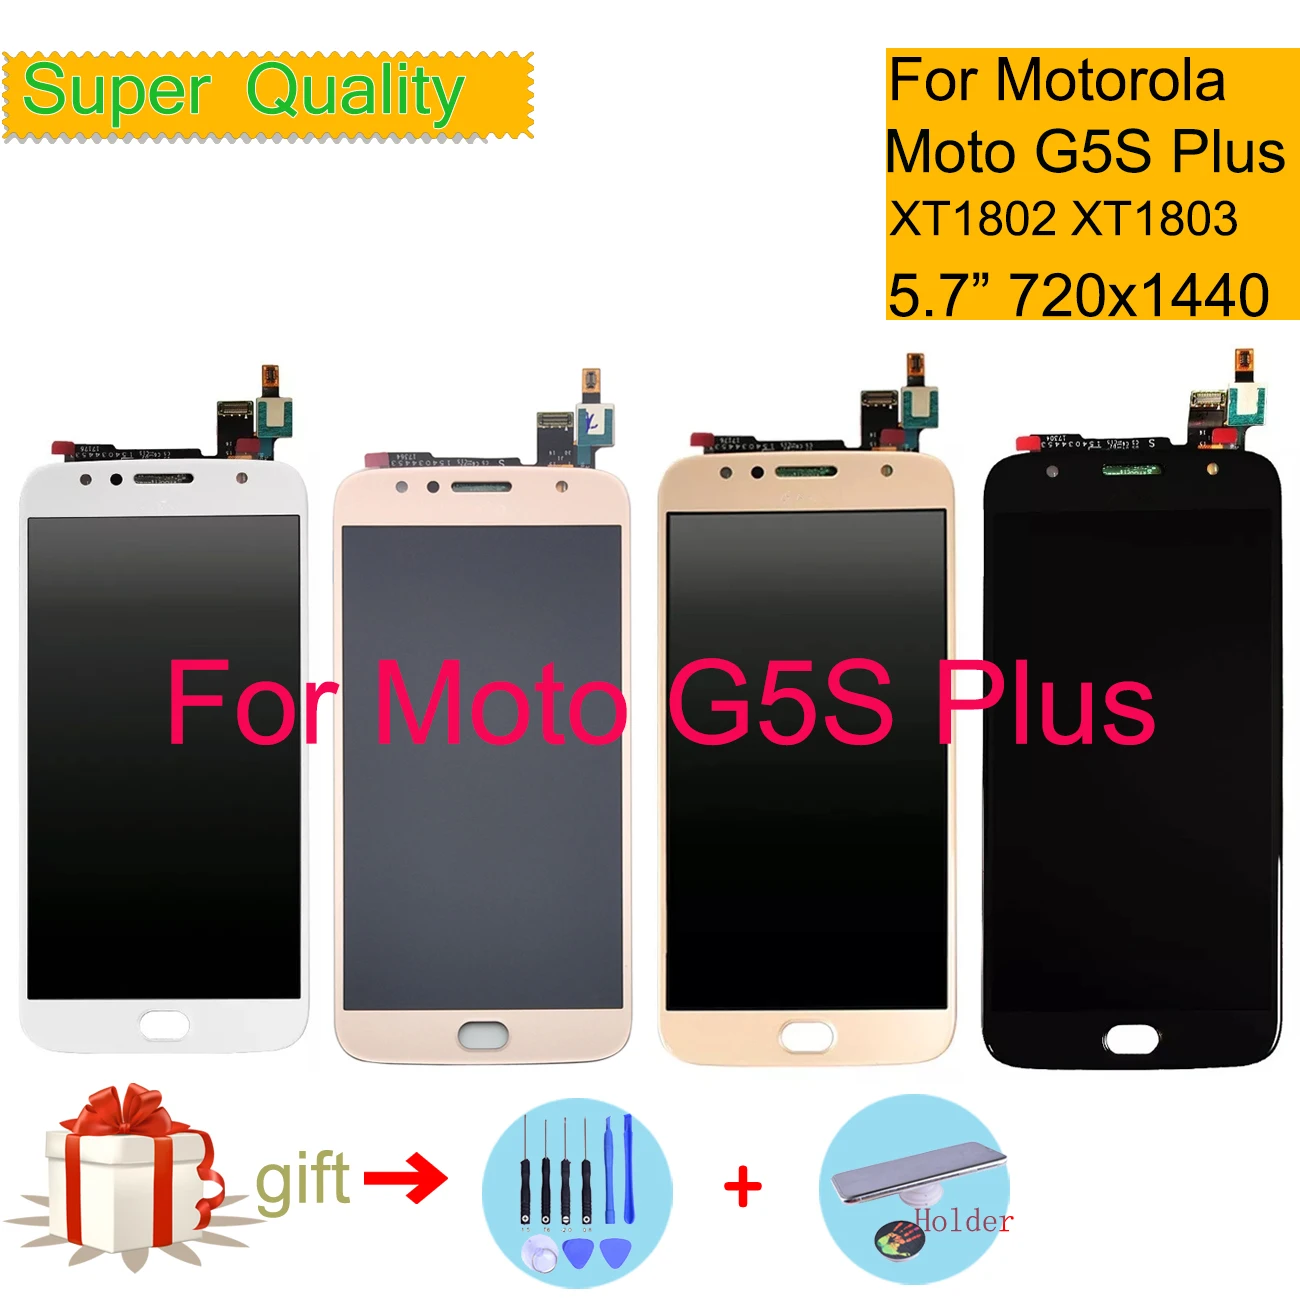 

ЖК-дисплей для Motorola Moto G5S Plus, сенсорный экран с дигитайзером и датчиком в сборе, монитор XT1802, XT1803, XT1805, XT1086